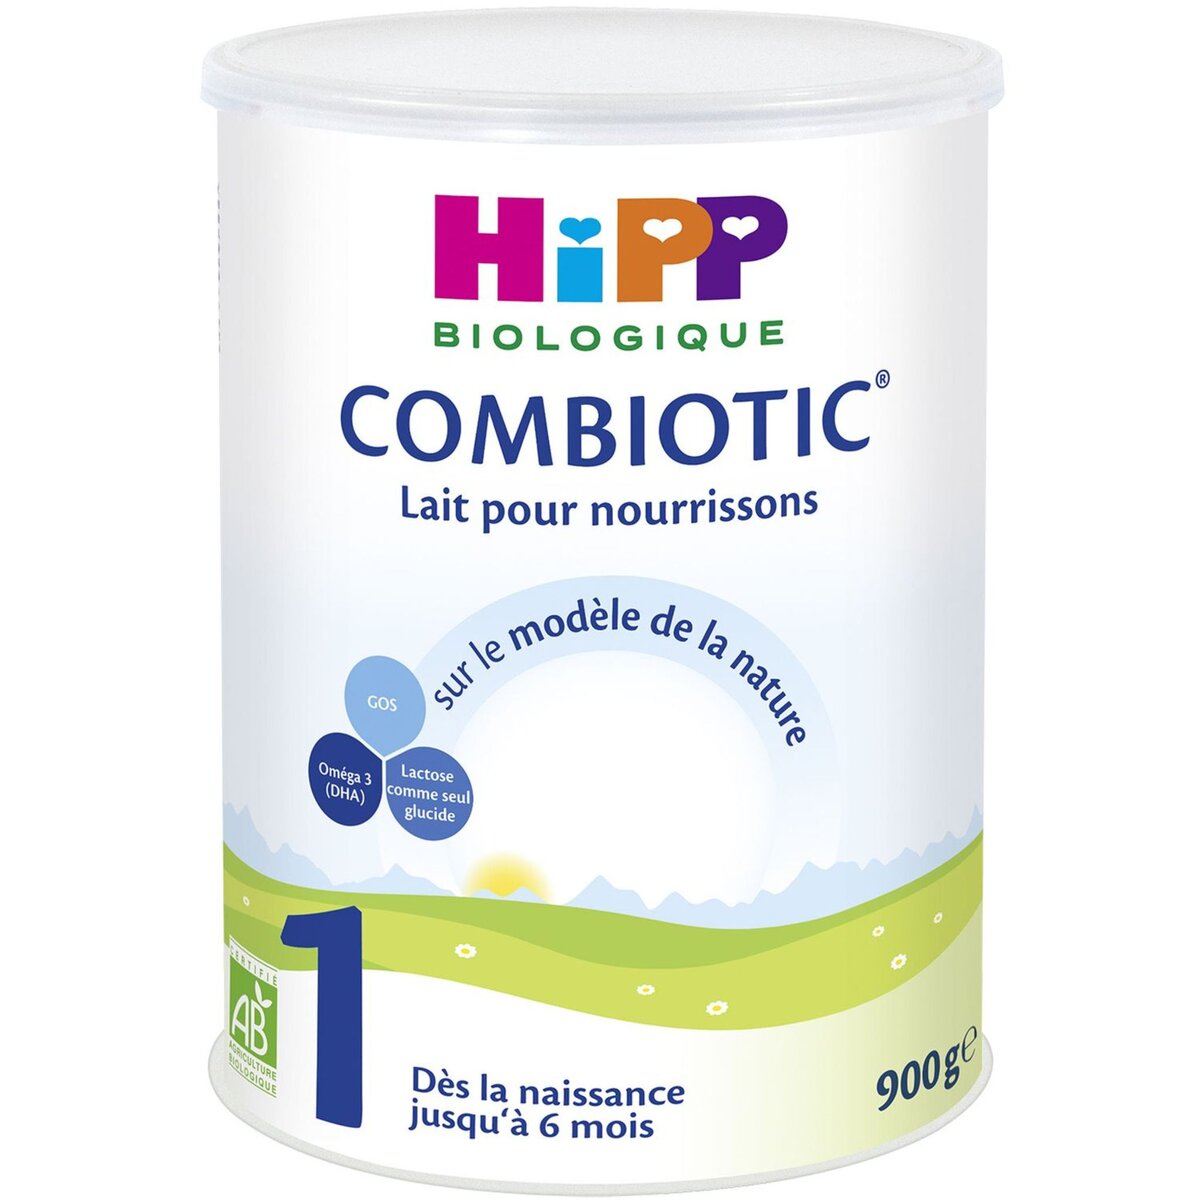 HIPP Combiotic 1 lait 1er âge en poudre bio dès la naissance 900g